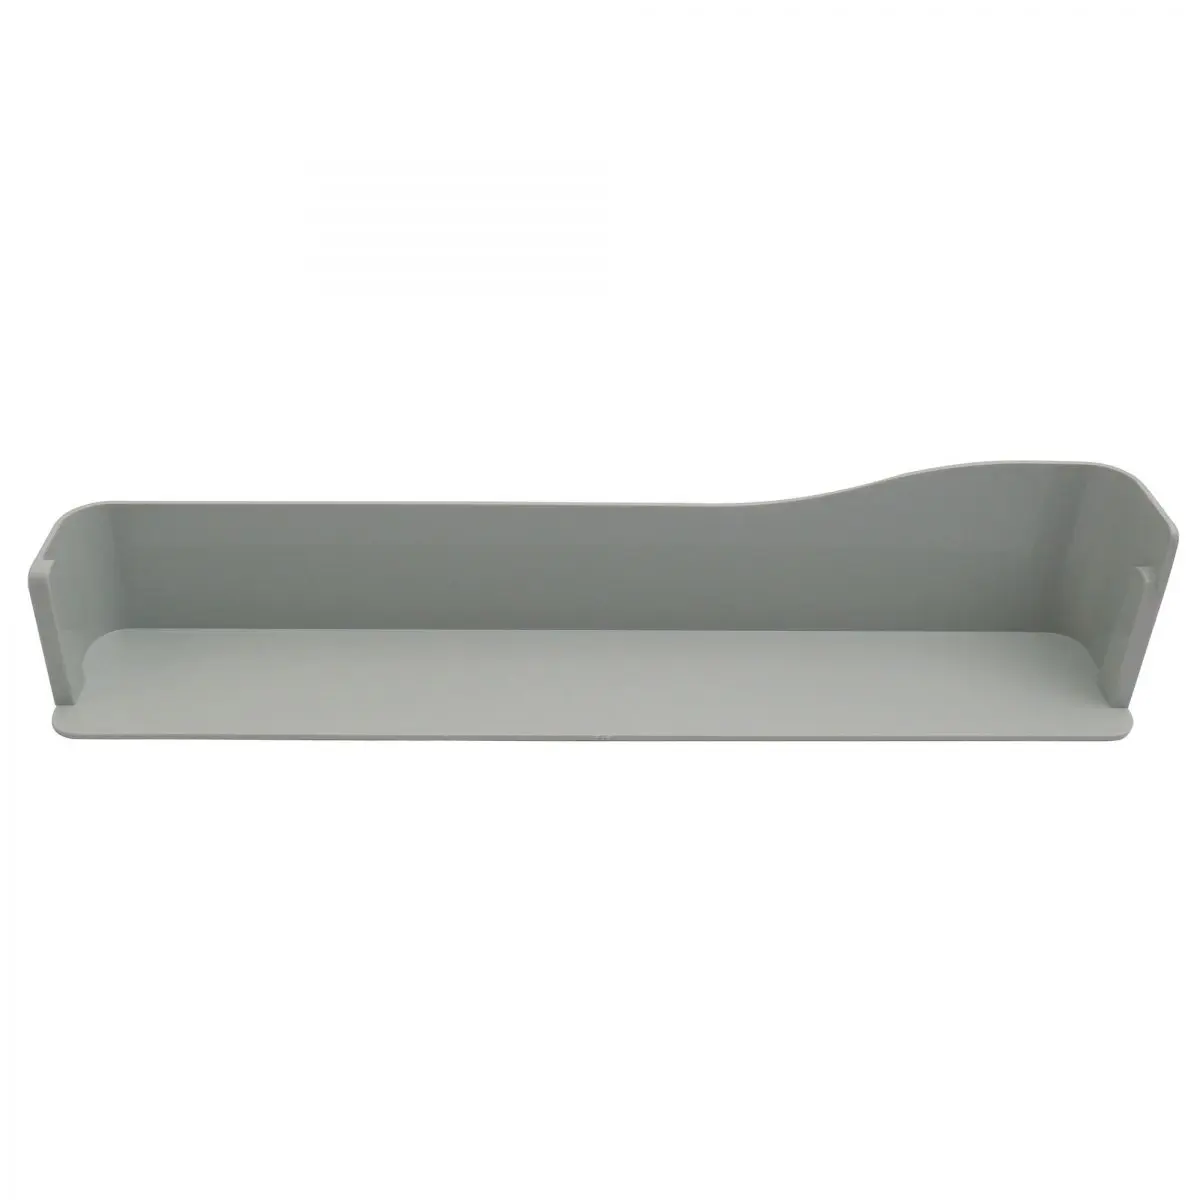 Polička sivá, š 40,4 x h 7,1 x v 6/7,9 cm pre chladničky Dometic série 6, 7, RGE 2000